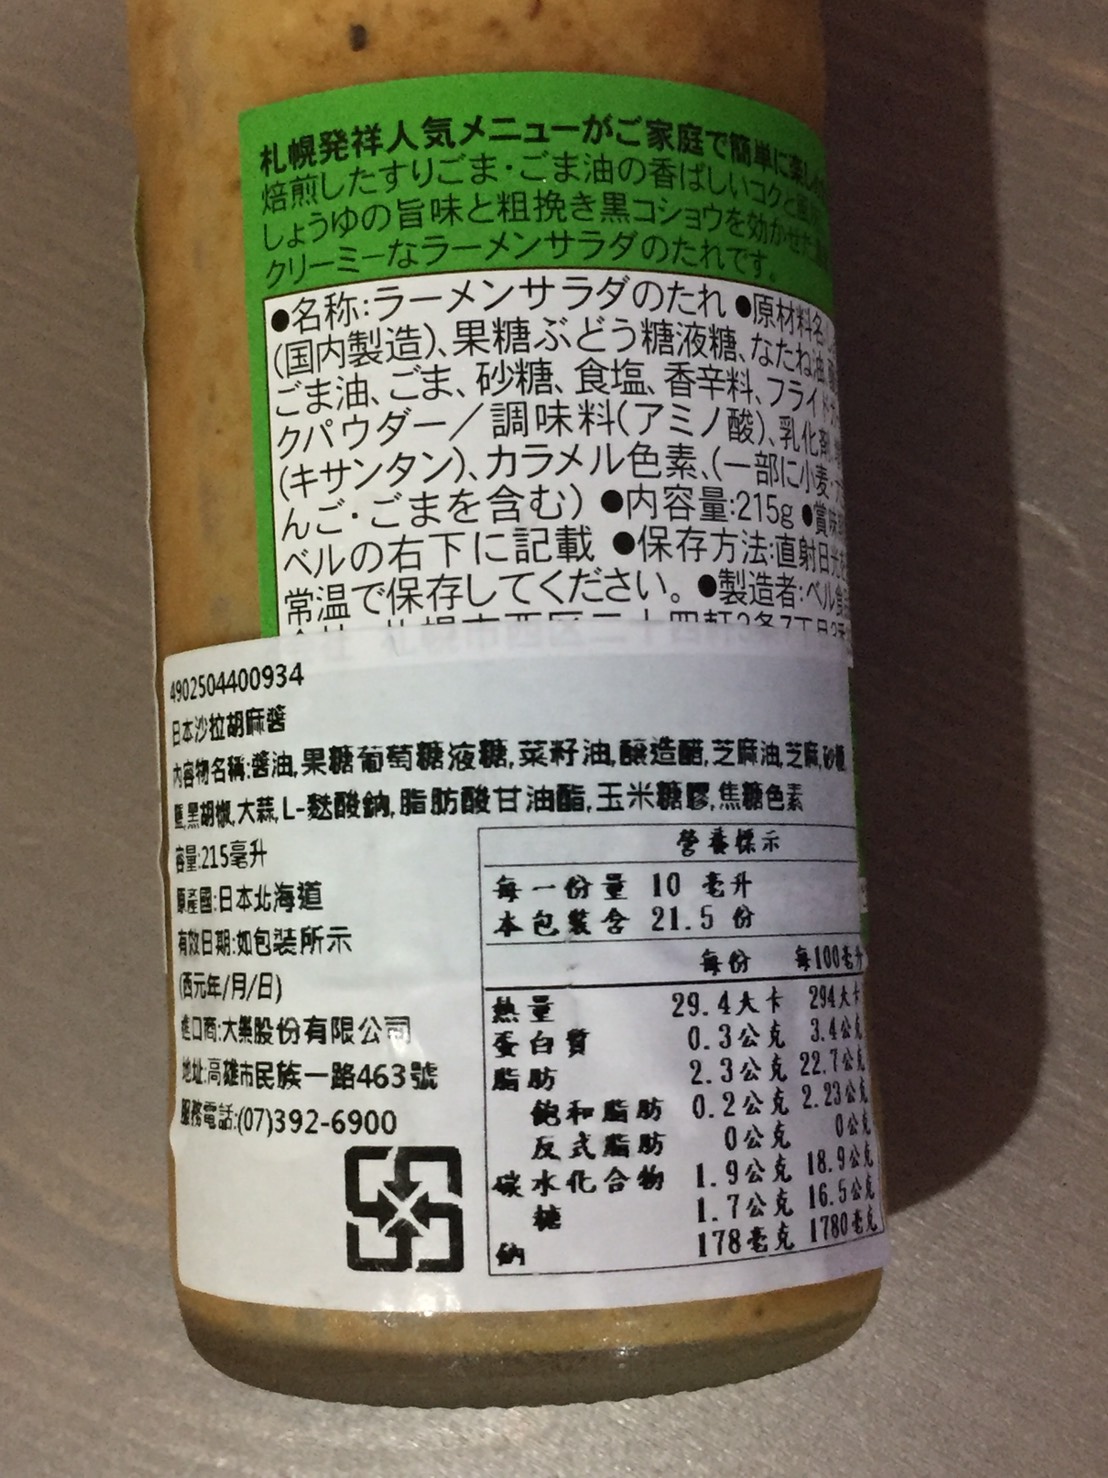 圖 日本貝爾食品沙拉胡麻醬